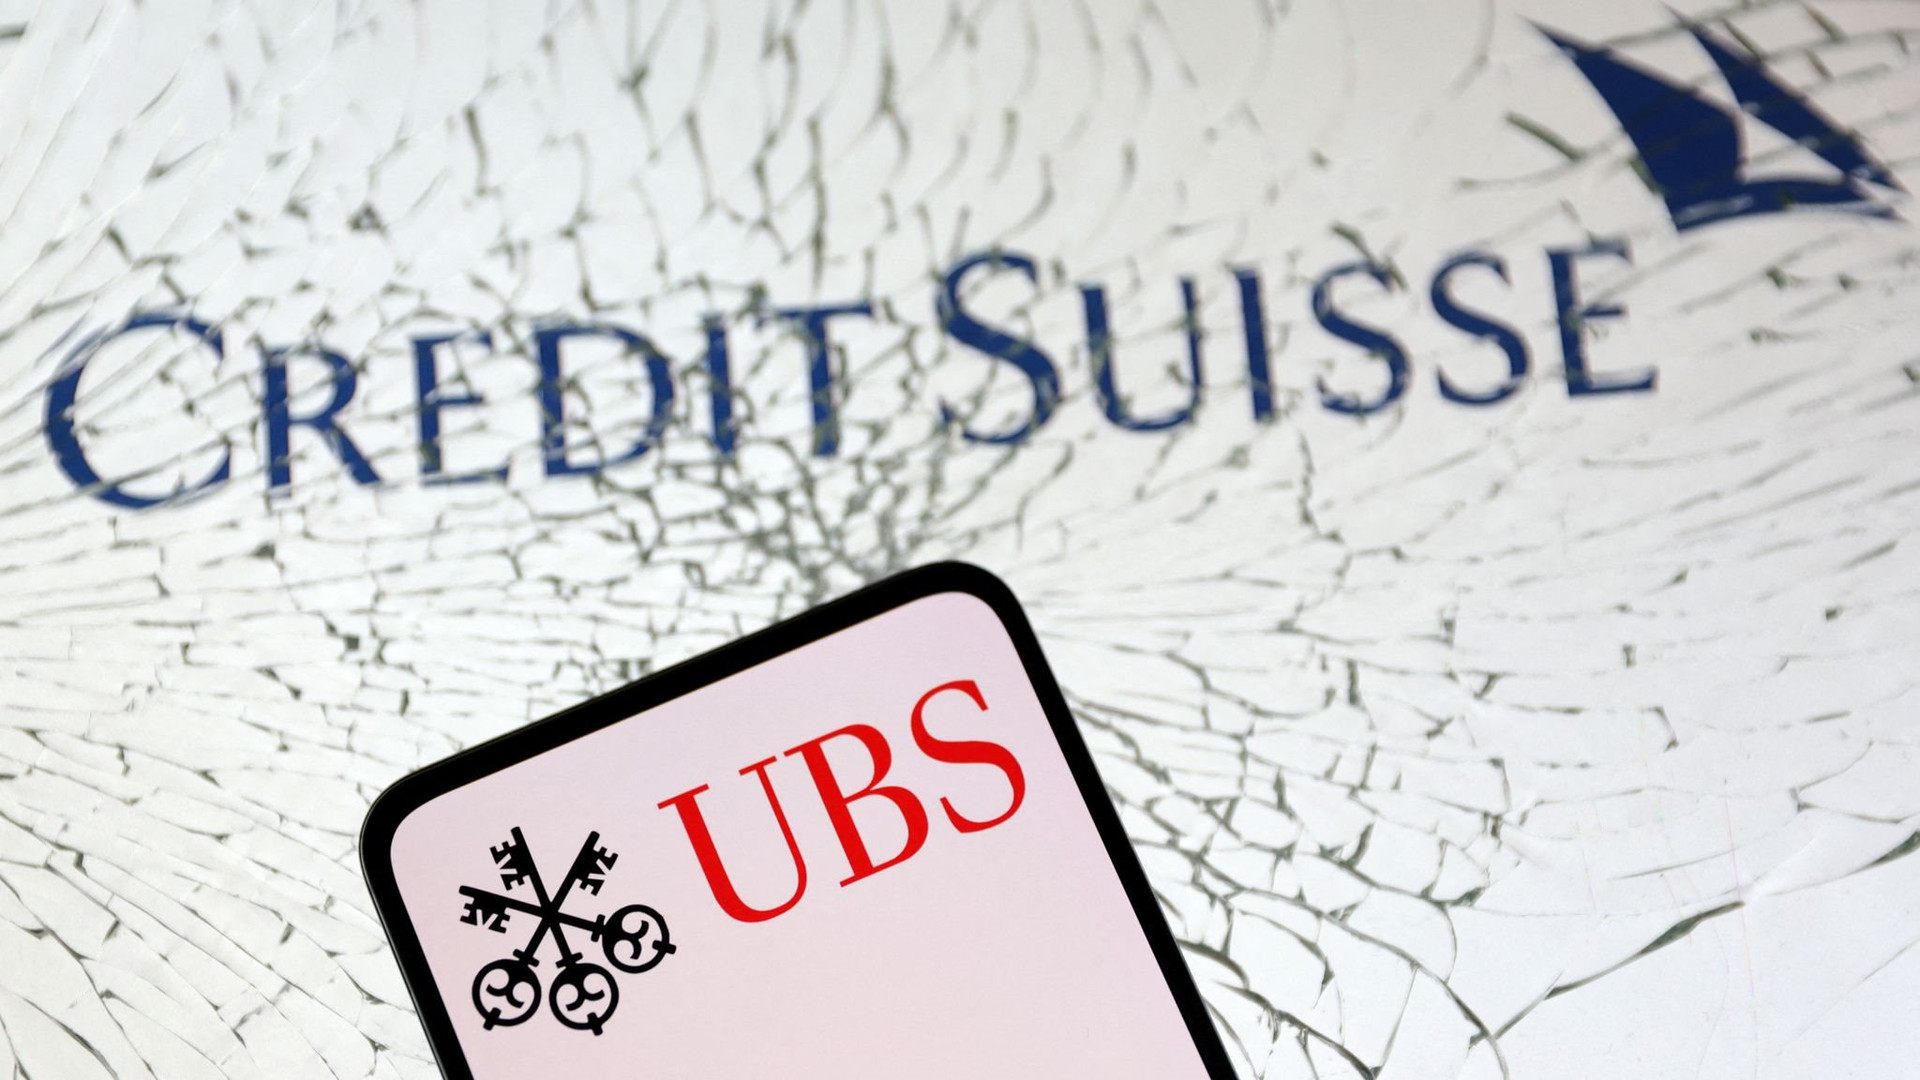 Thị giá 8 tỷ USD, Credit Suisse chính thức phản đối việc bán mình cho UBS giá bằng 1/8